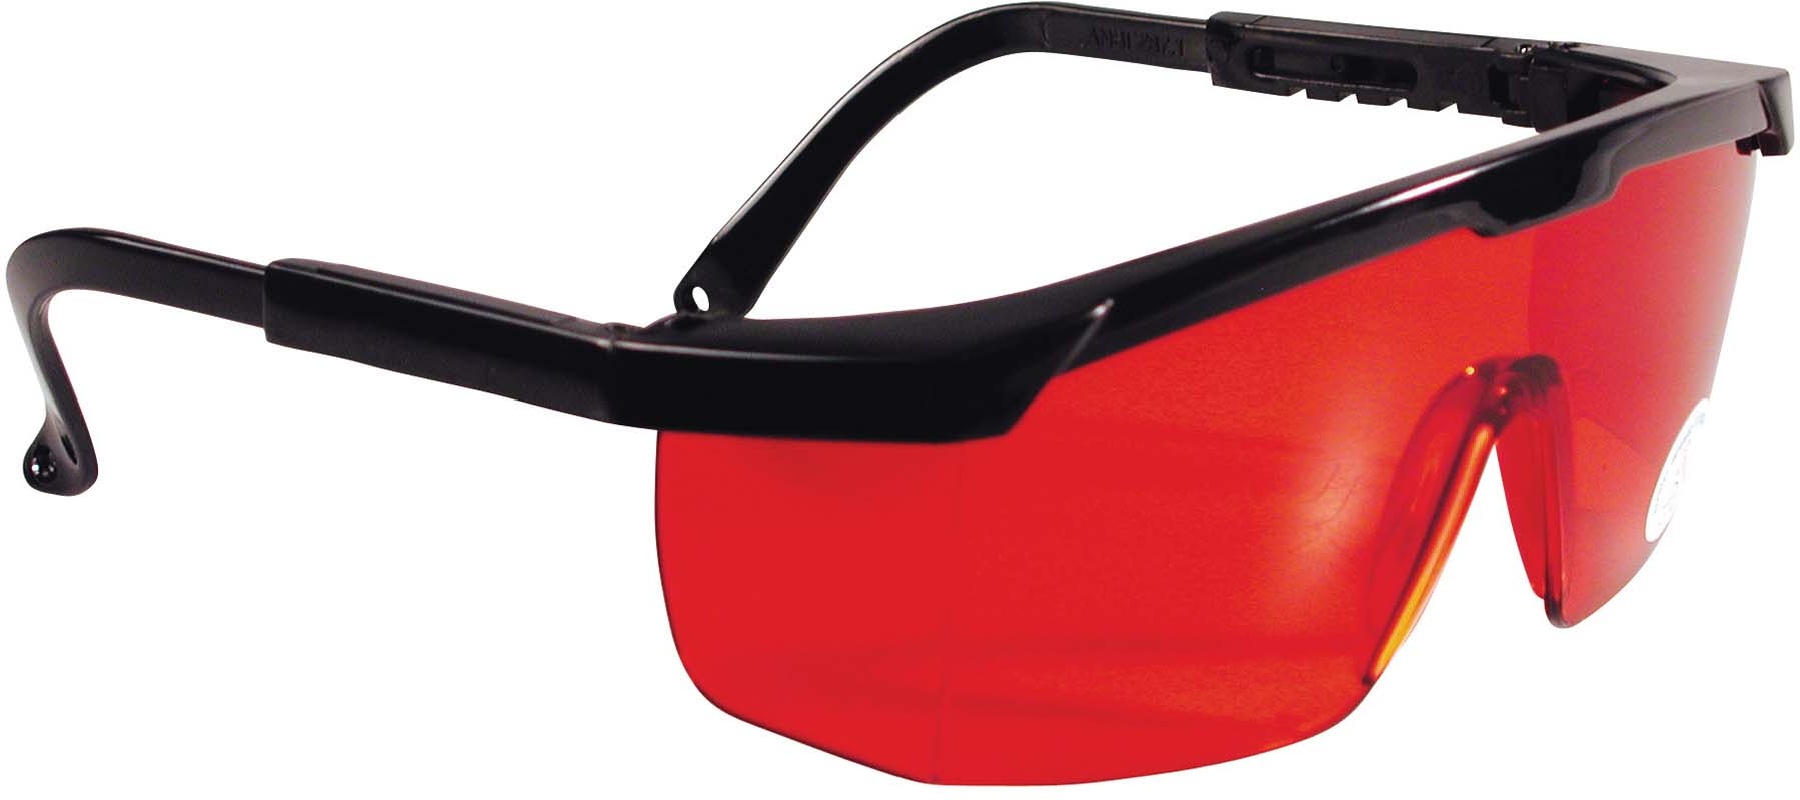 Купить Stanley очки для работы с лазерными приборами 1-77-171